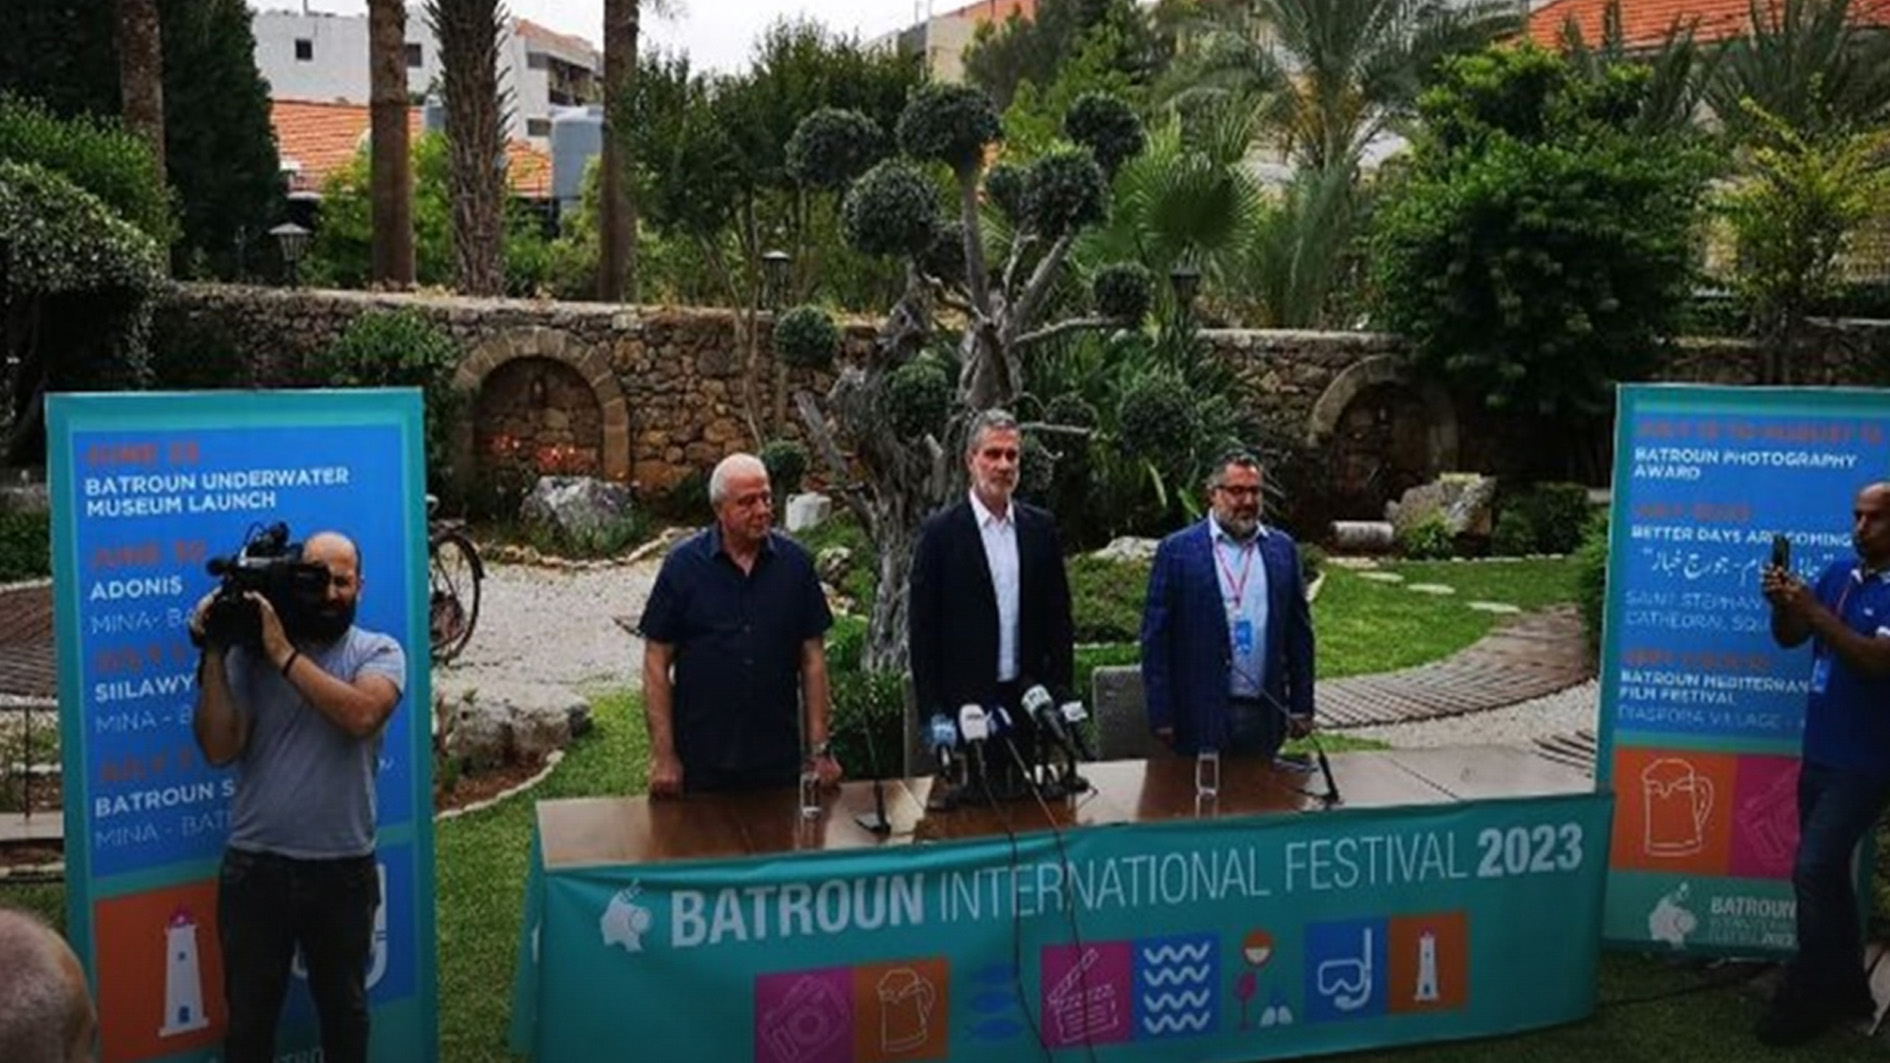 وزير السياحة اللبناني وليد نصار لإيلاف: برنامج مهرجانات البترون لصيف 2023 مميز وحافل